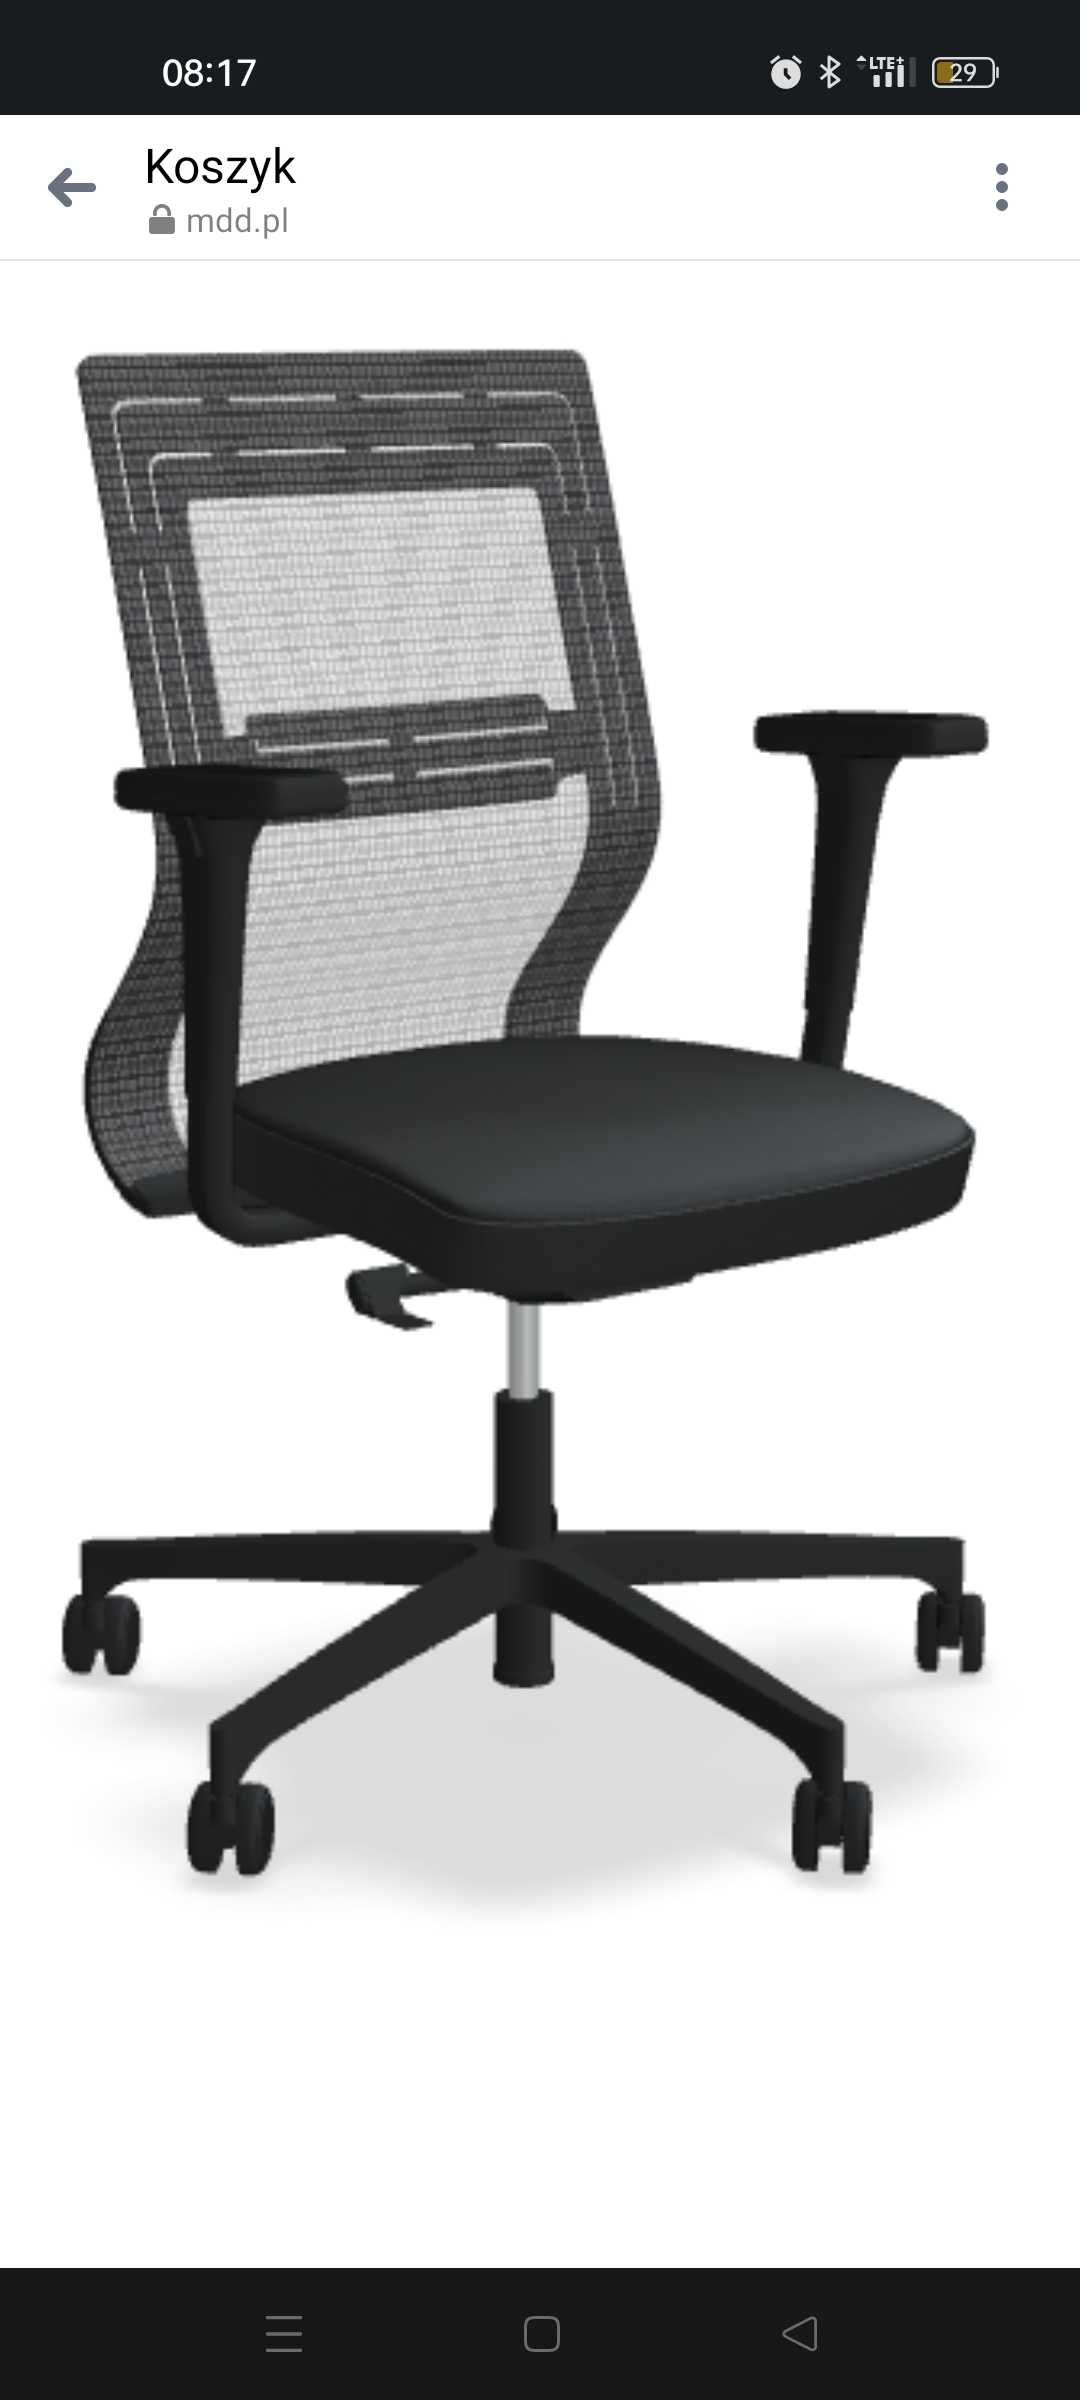 Krzesło biurowe z podłokietnikamk